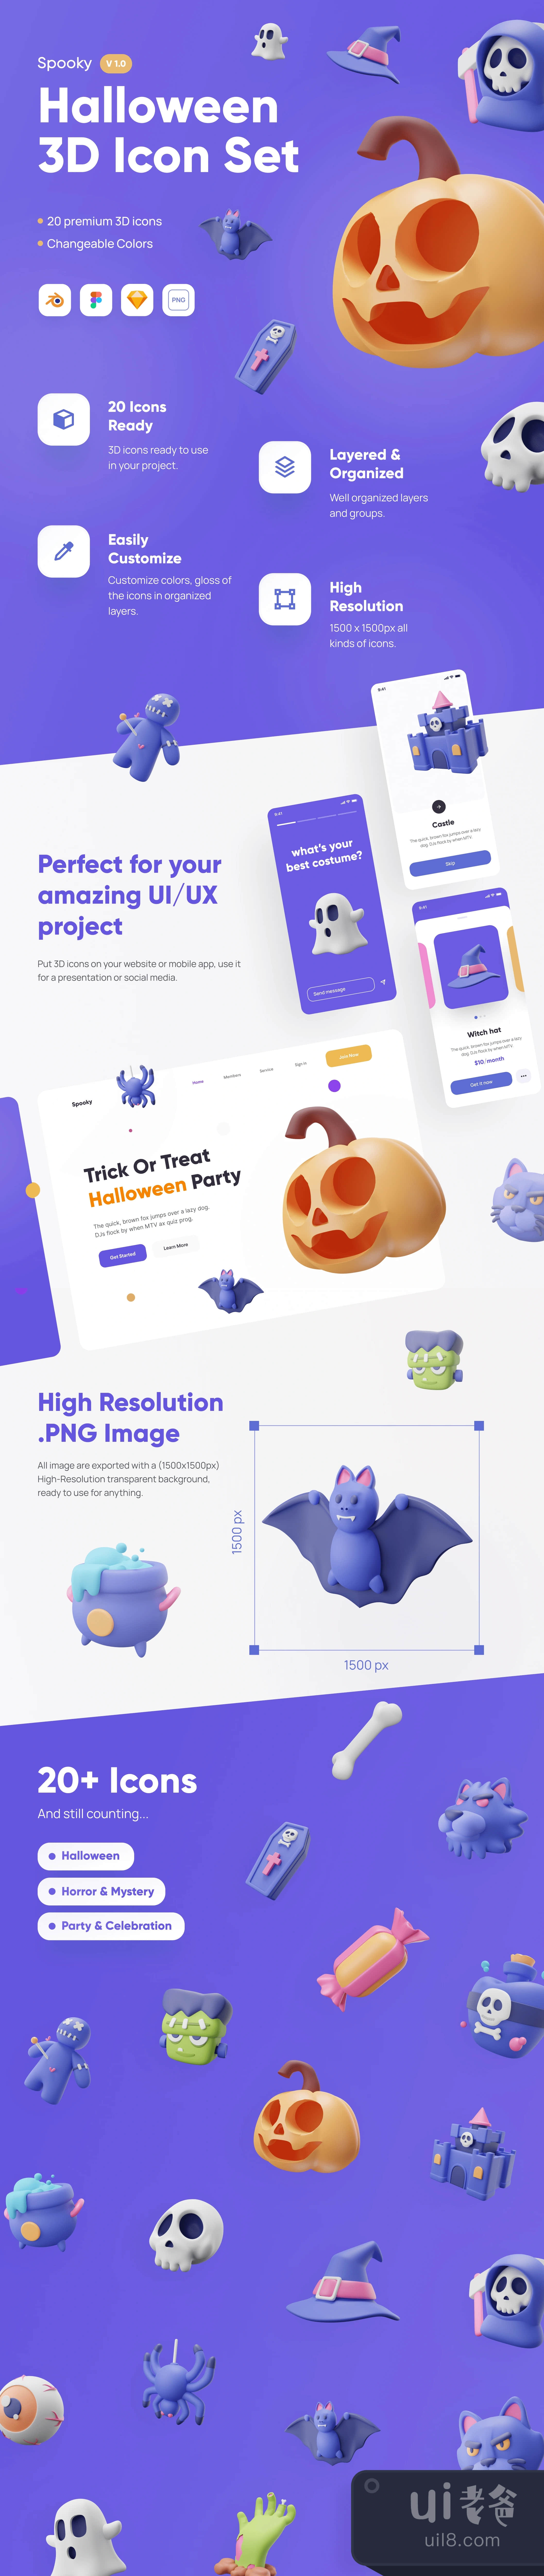 诡异的 - 万圣节3D图标集 (Spooky - Halloween 3D Icon Set)插图